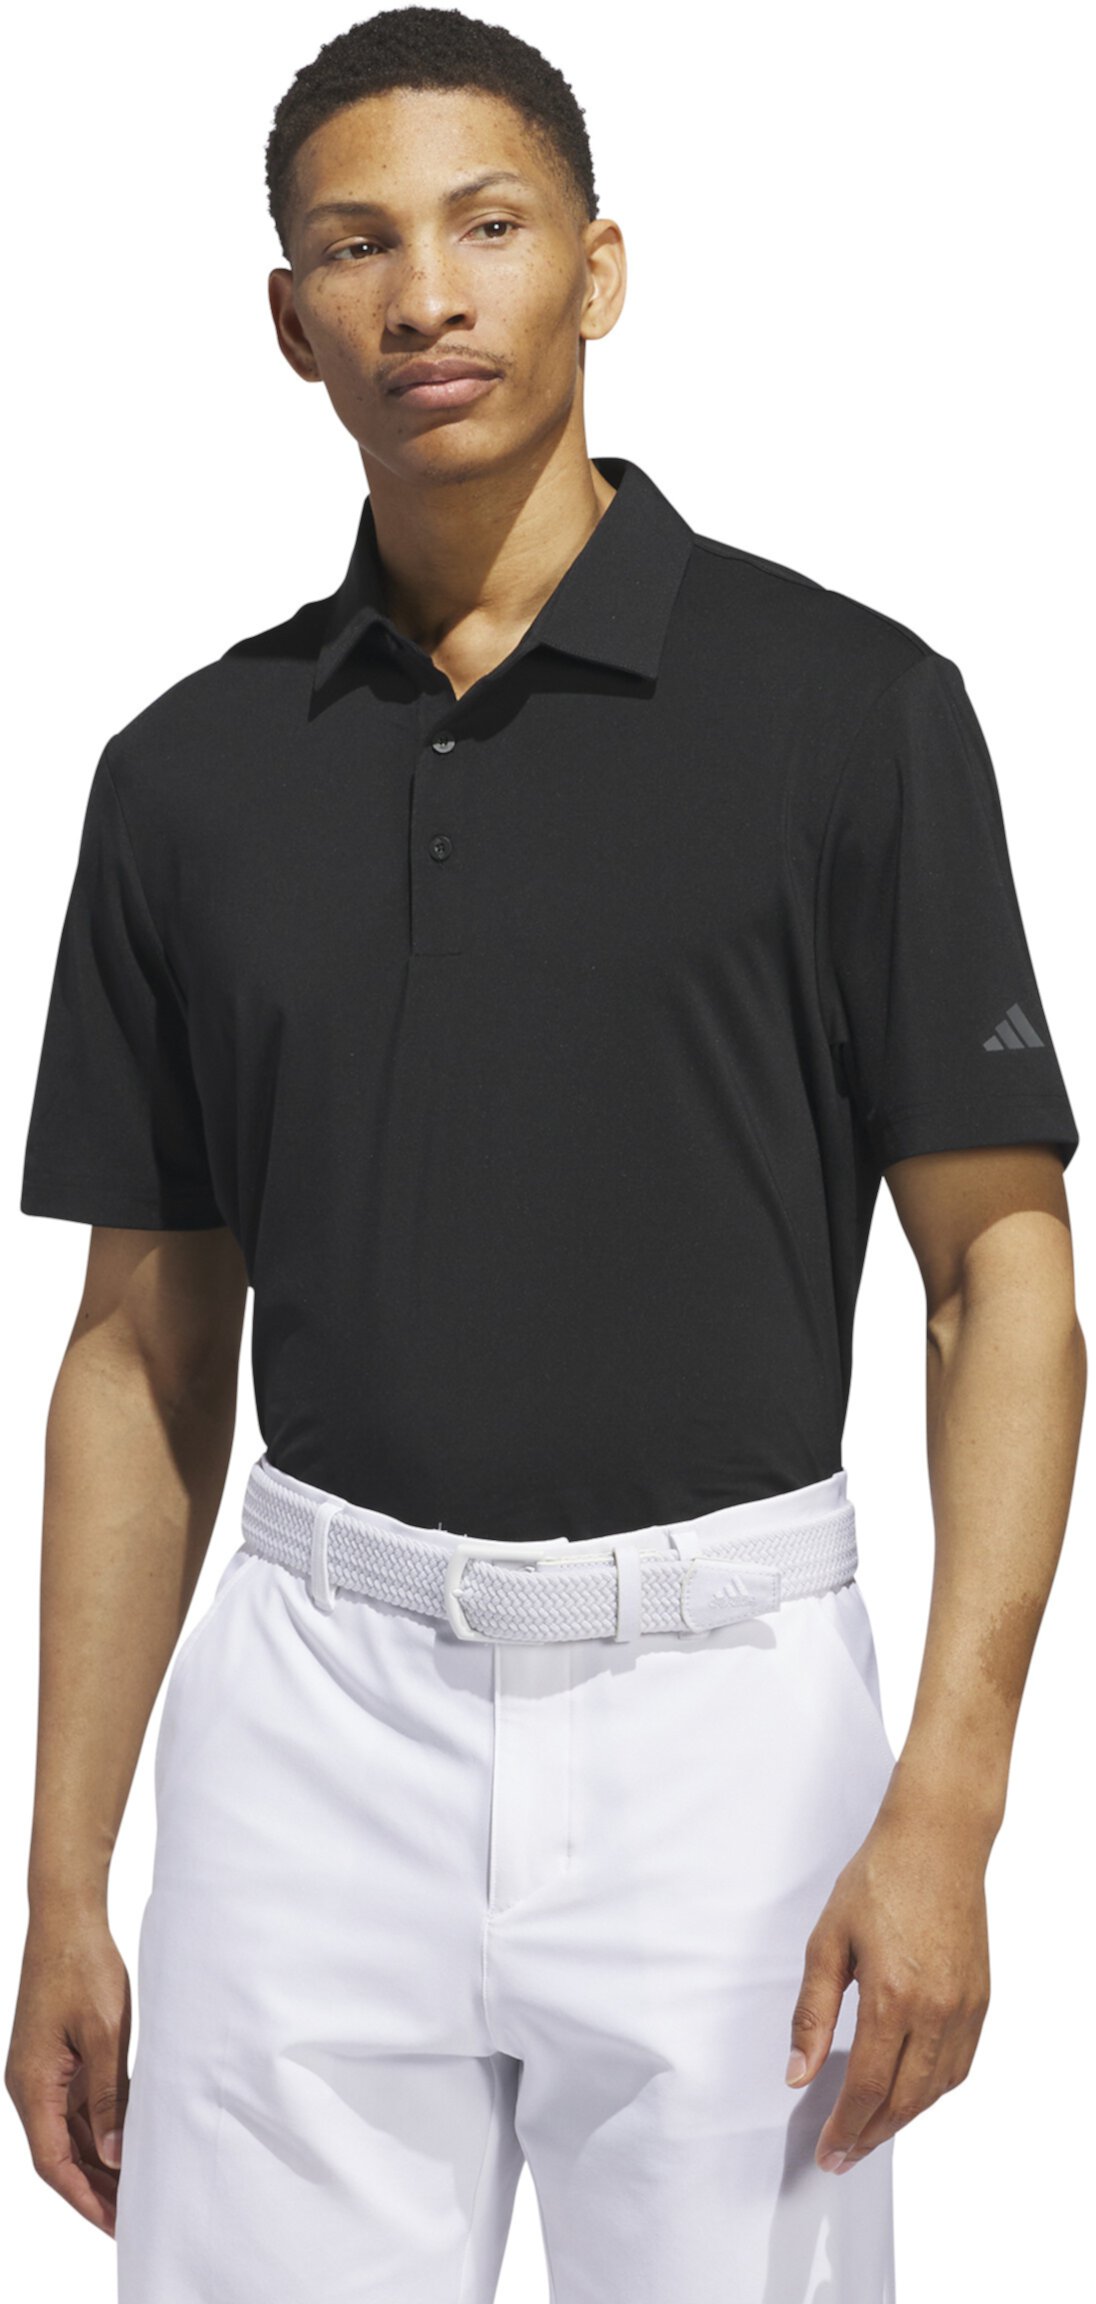 Однотонная рубашка-поло с короткими рукавами Ultimate365 Adidas